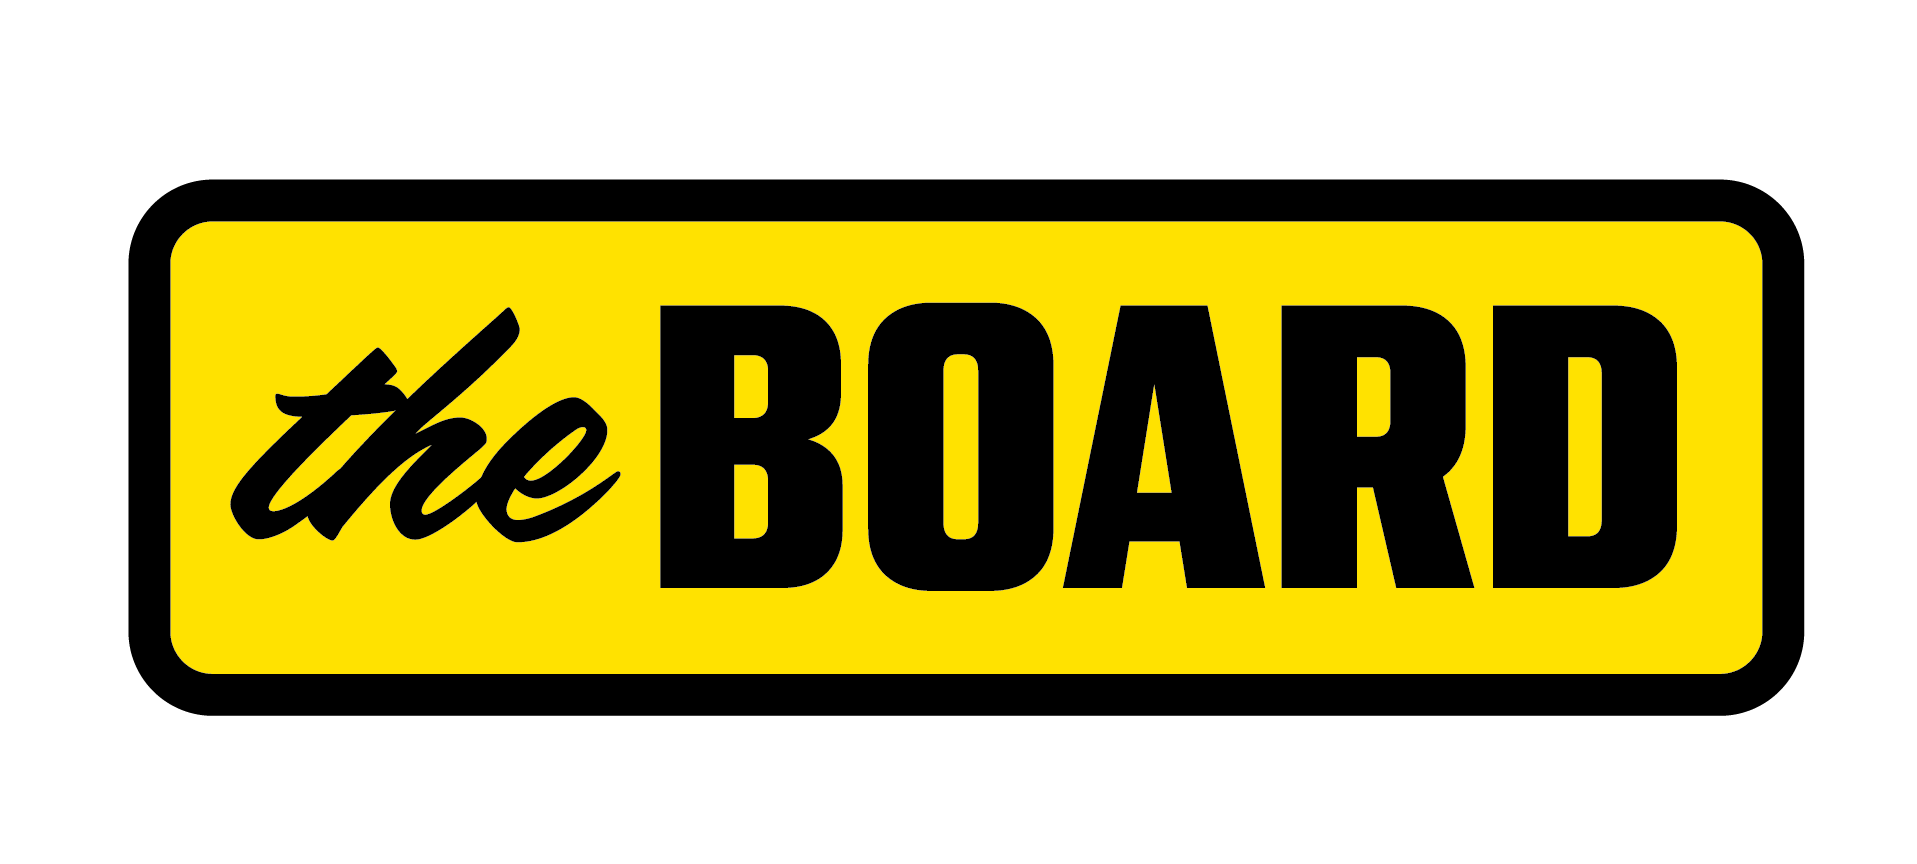 The Board logo